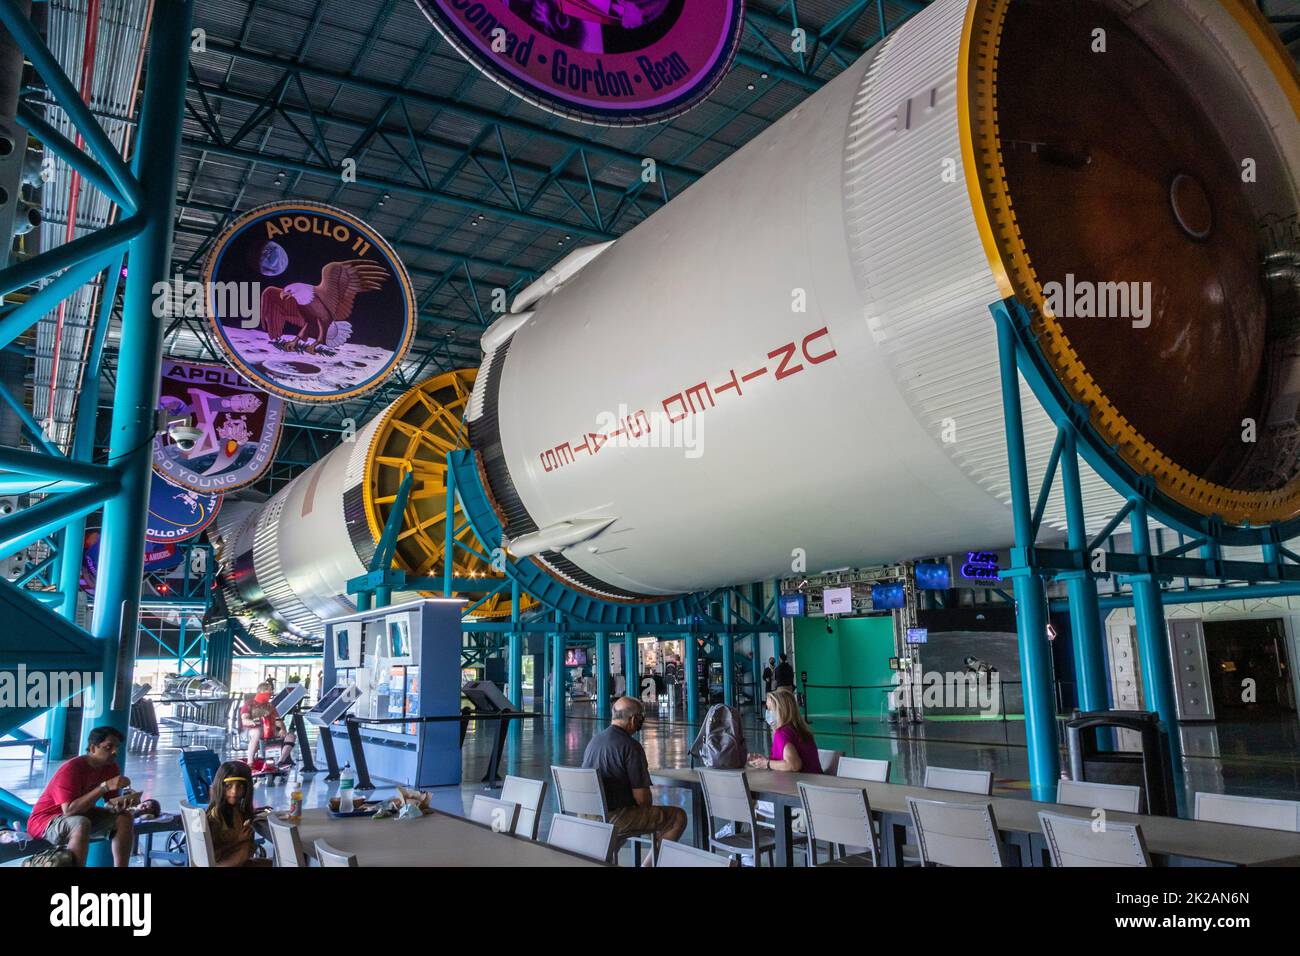 Complejo para visitantes del Centro Espacial Kennedy en Florida. Foto de stock